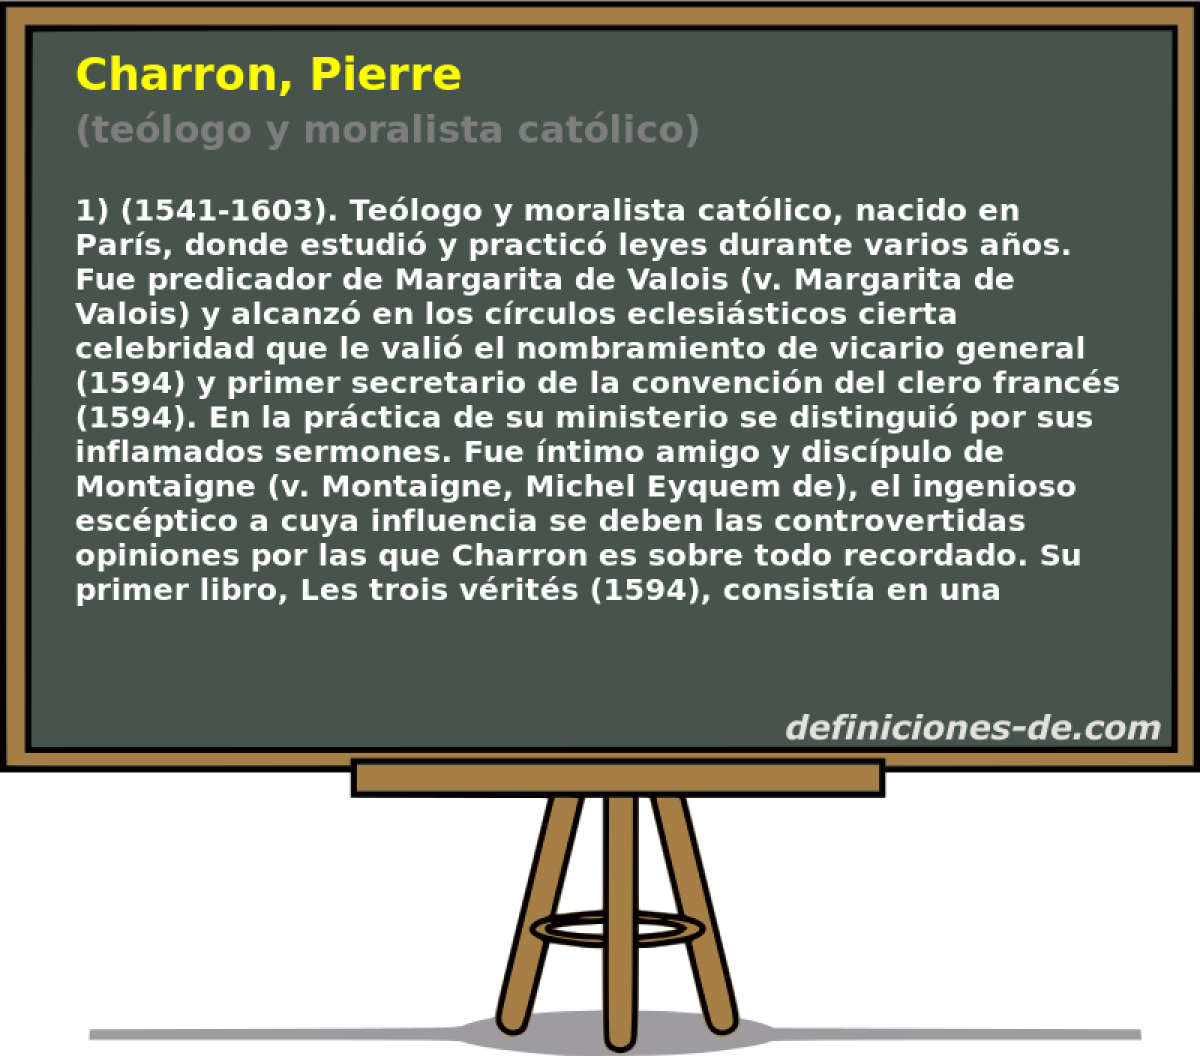 Charron, Pierre (telogo y moralista catlico)